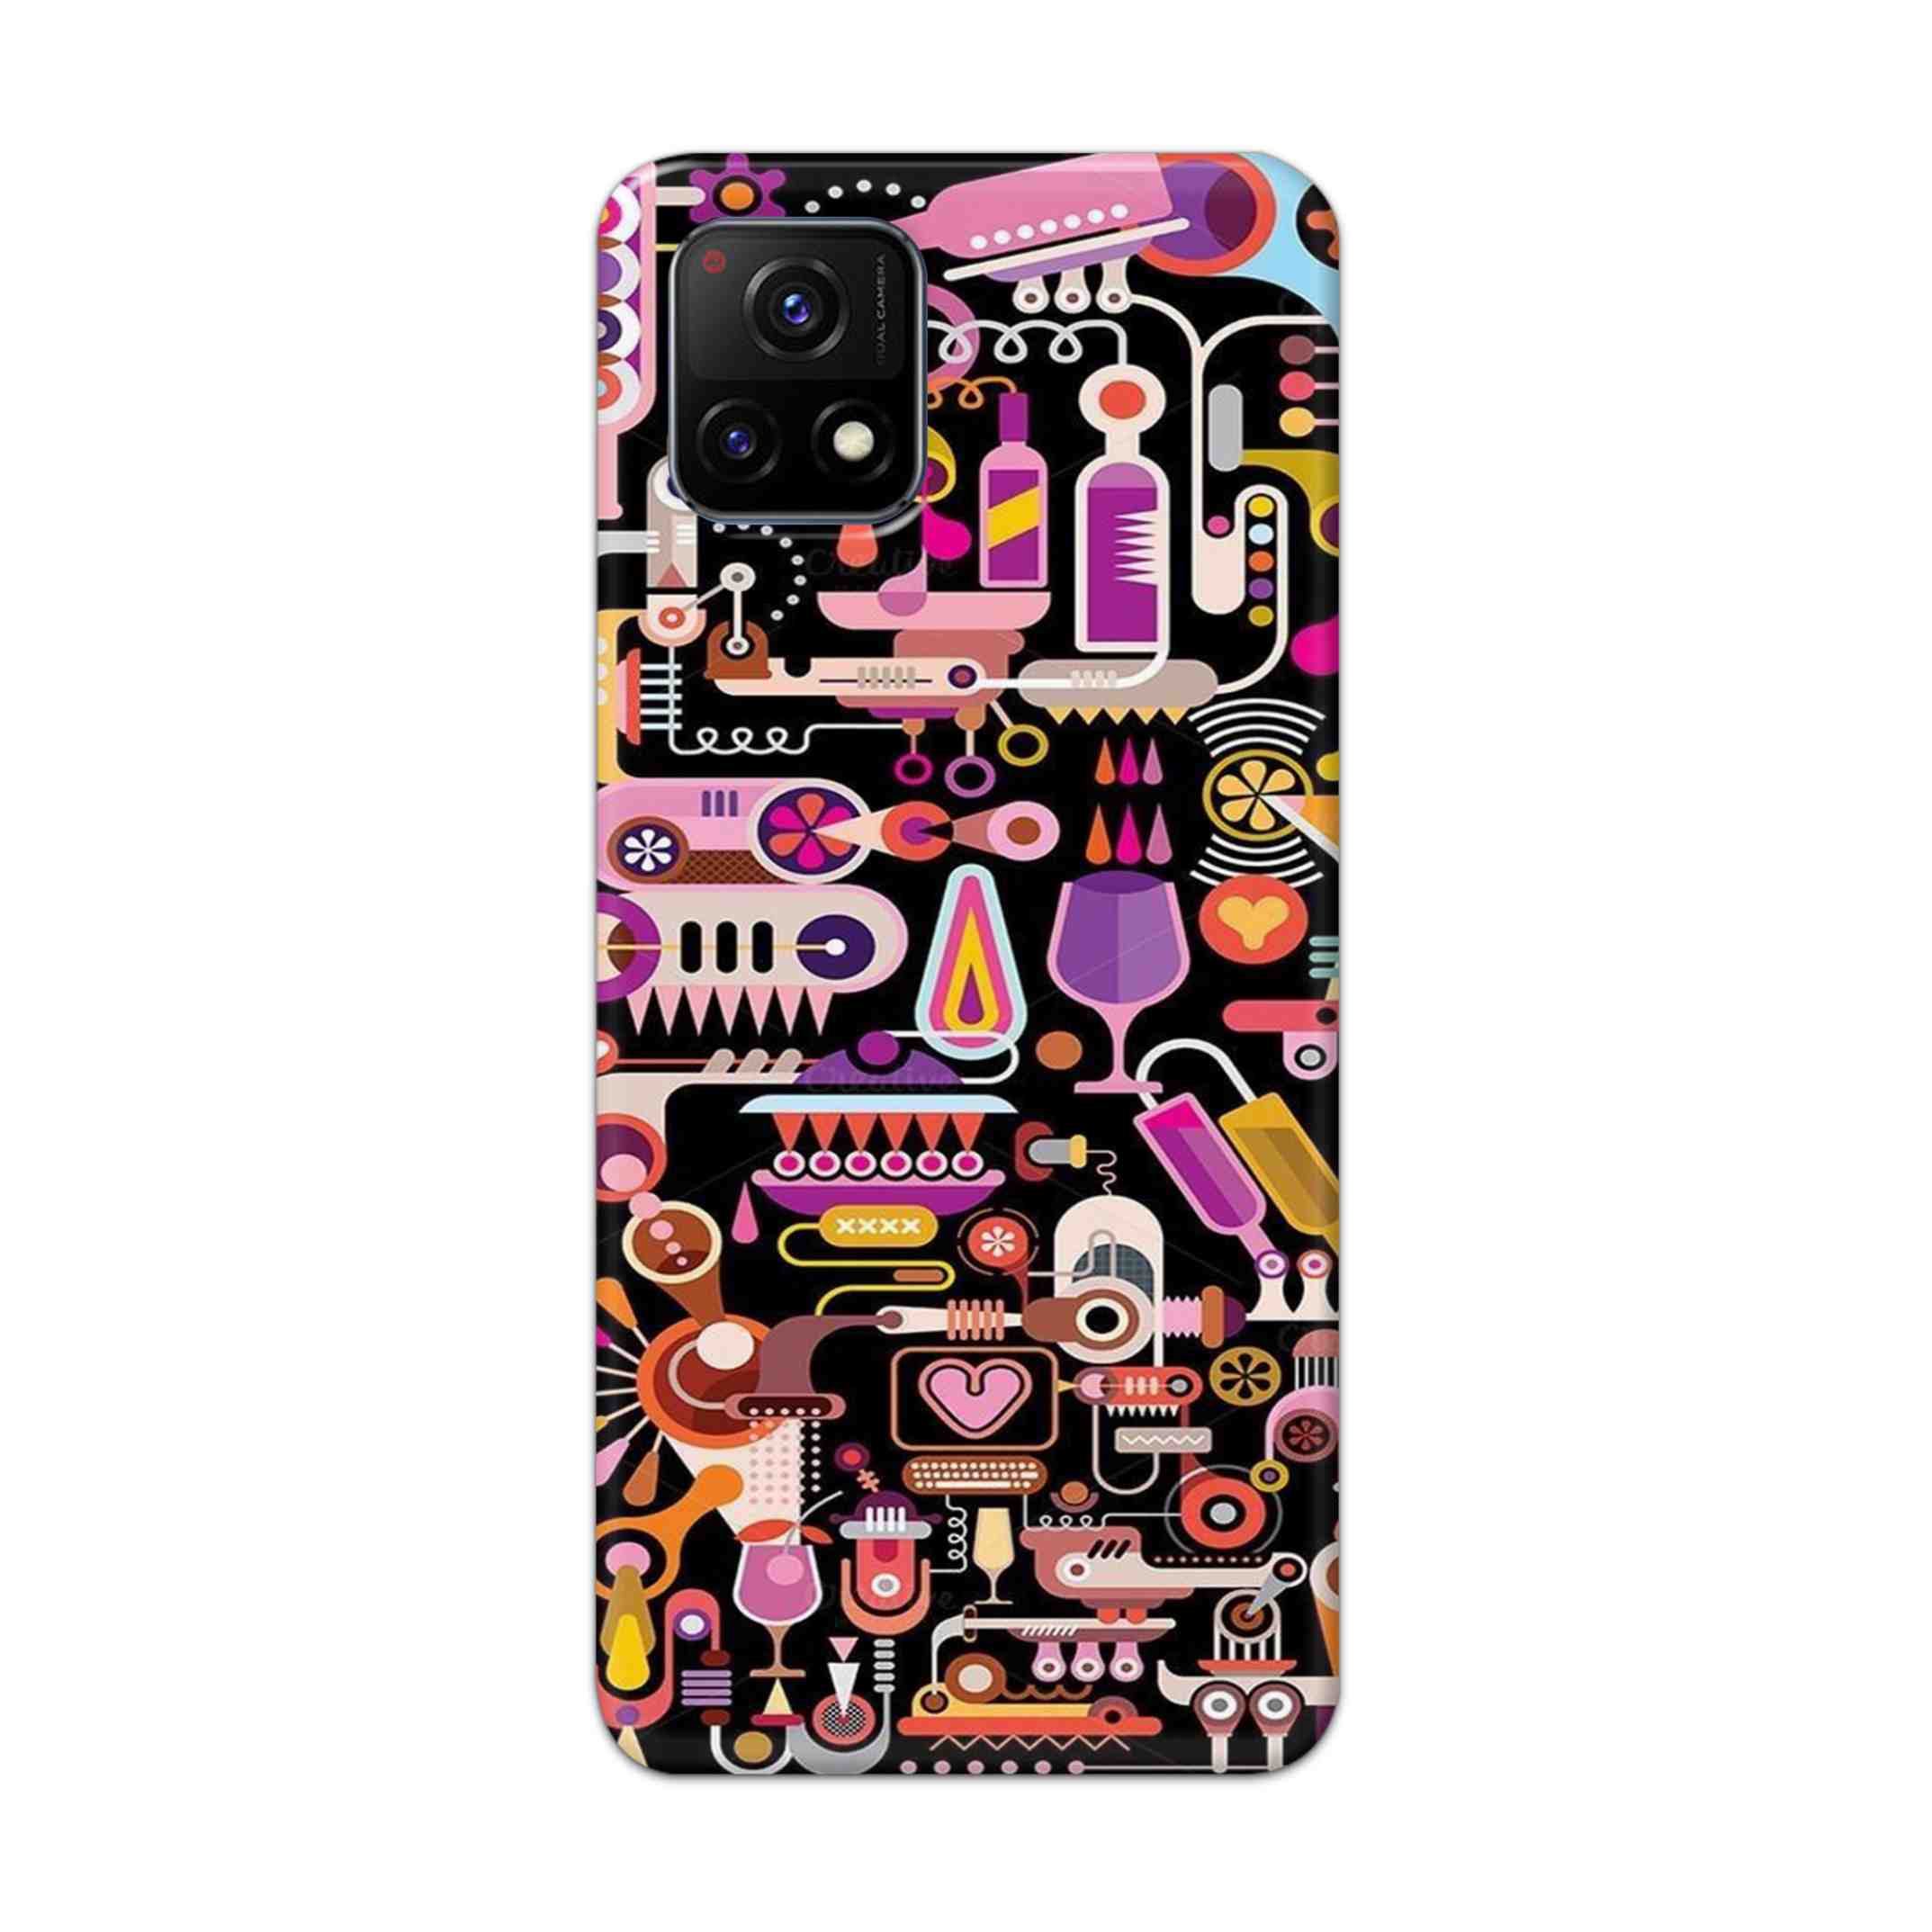 Buy Lab Art Hard Back Mobile Phone Case Cover For Vivo Y72 5G Online